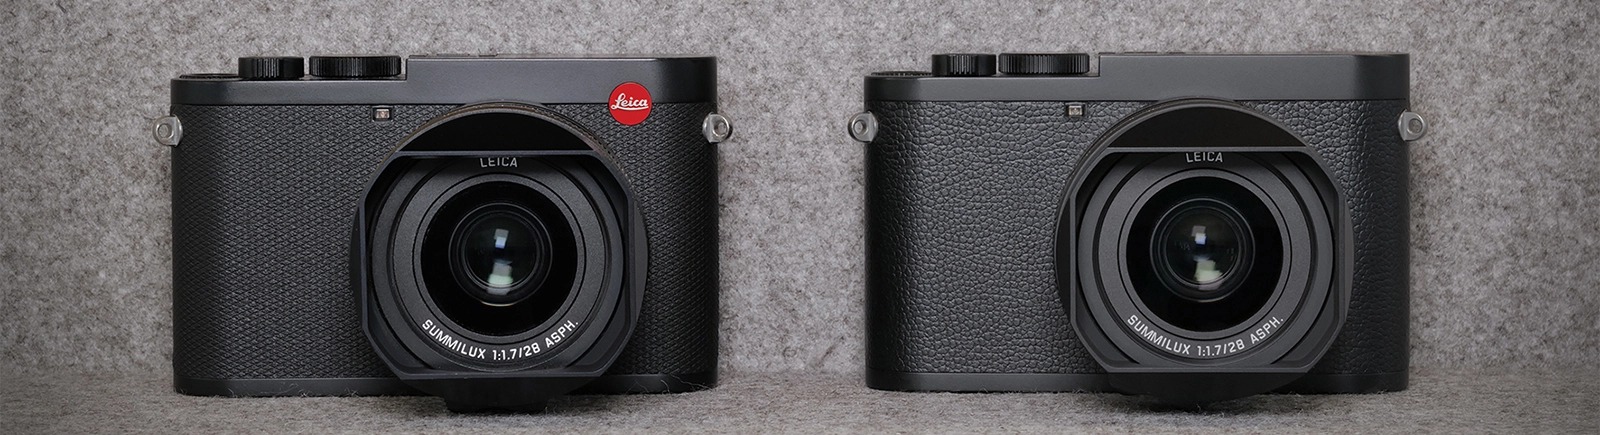 Leica ra mắt máy ảnh Q2 Monochrome cảm biến 46.7MP, ống kính cố định 28mm F1.7